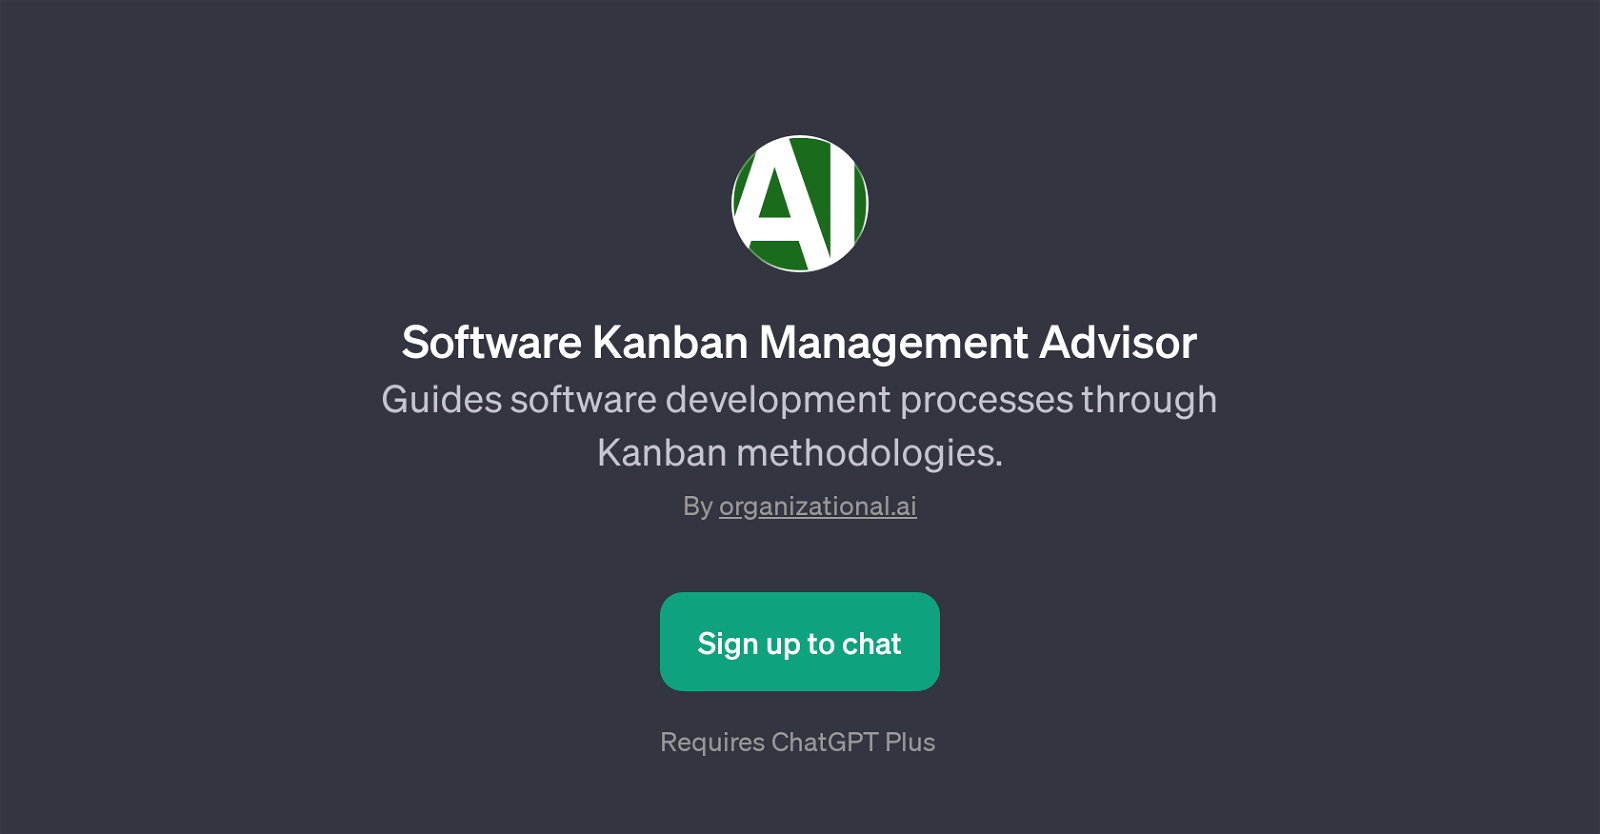 Software Kanban Management Advisor website